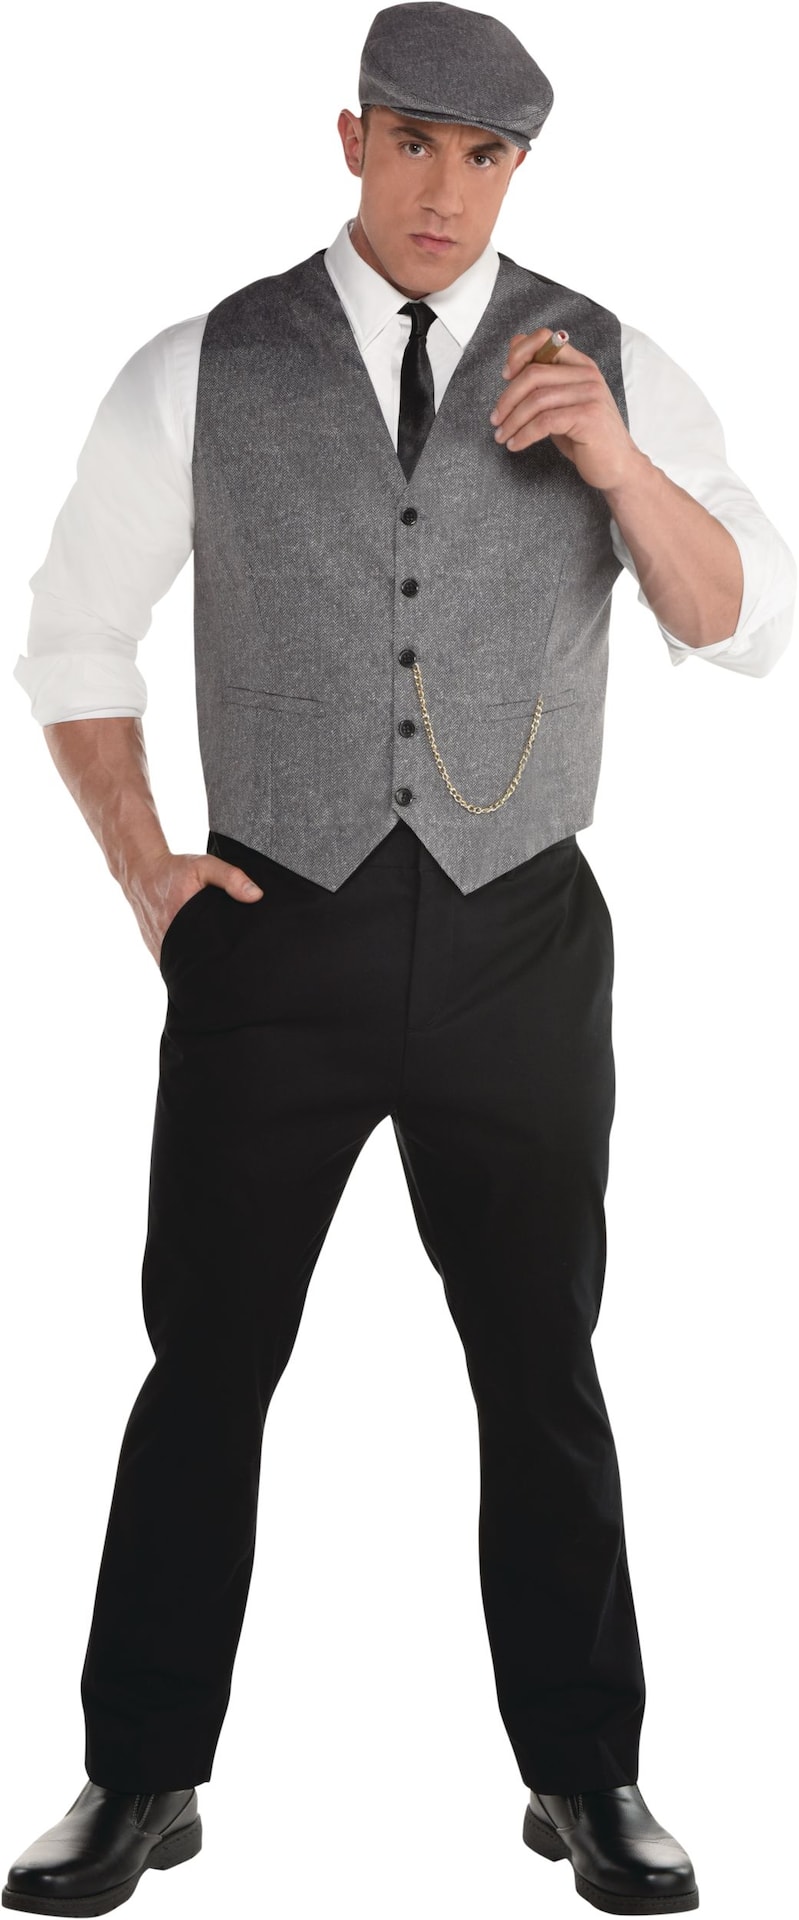 Men's Grey Decades Suit with Vest/Tie/Hat, Halloween Costume